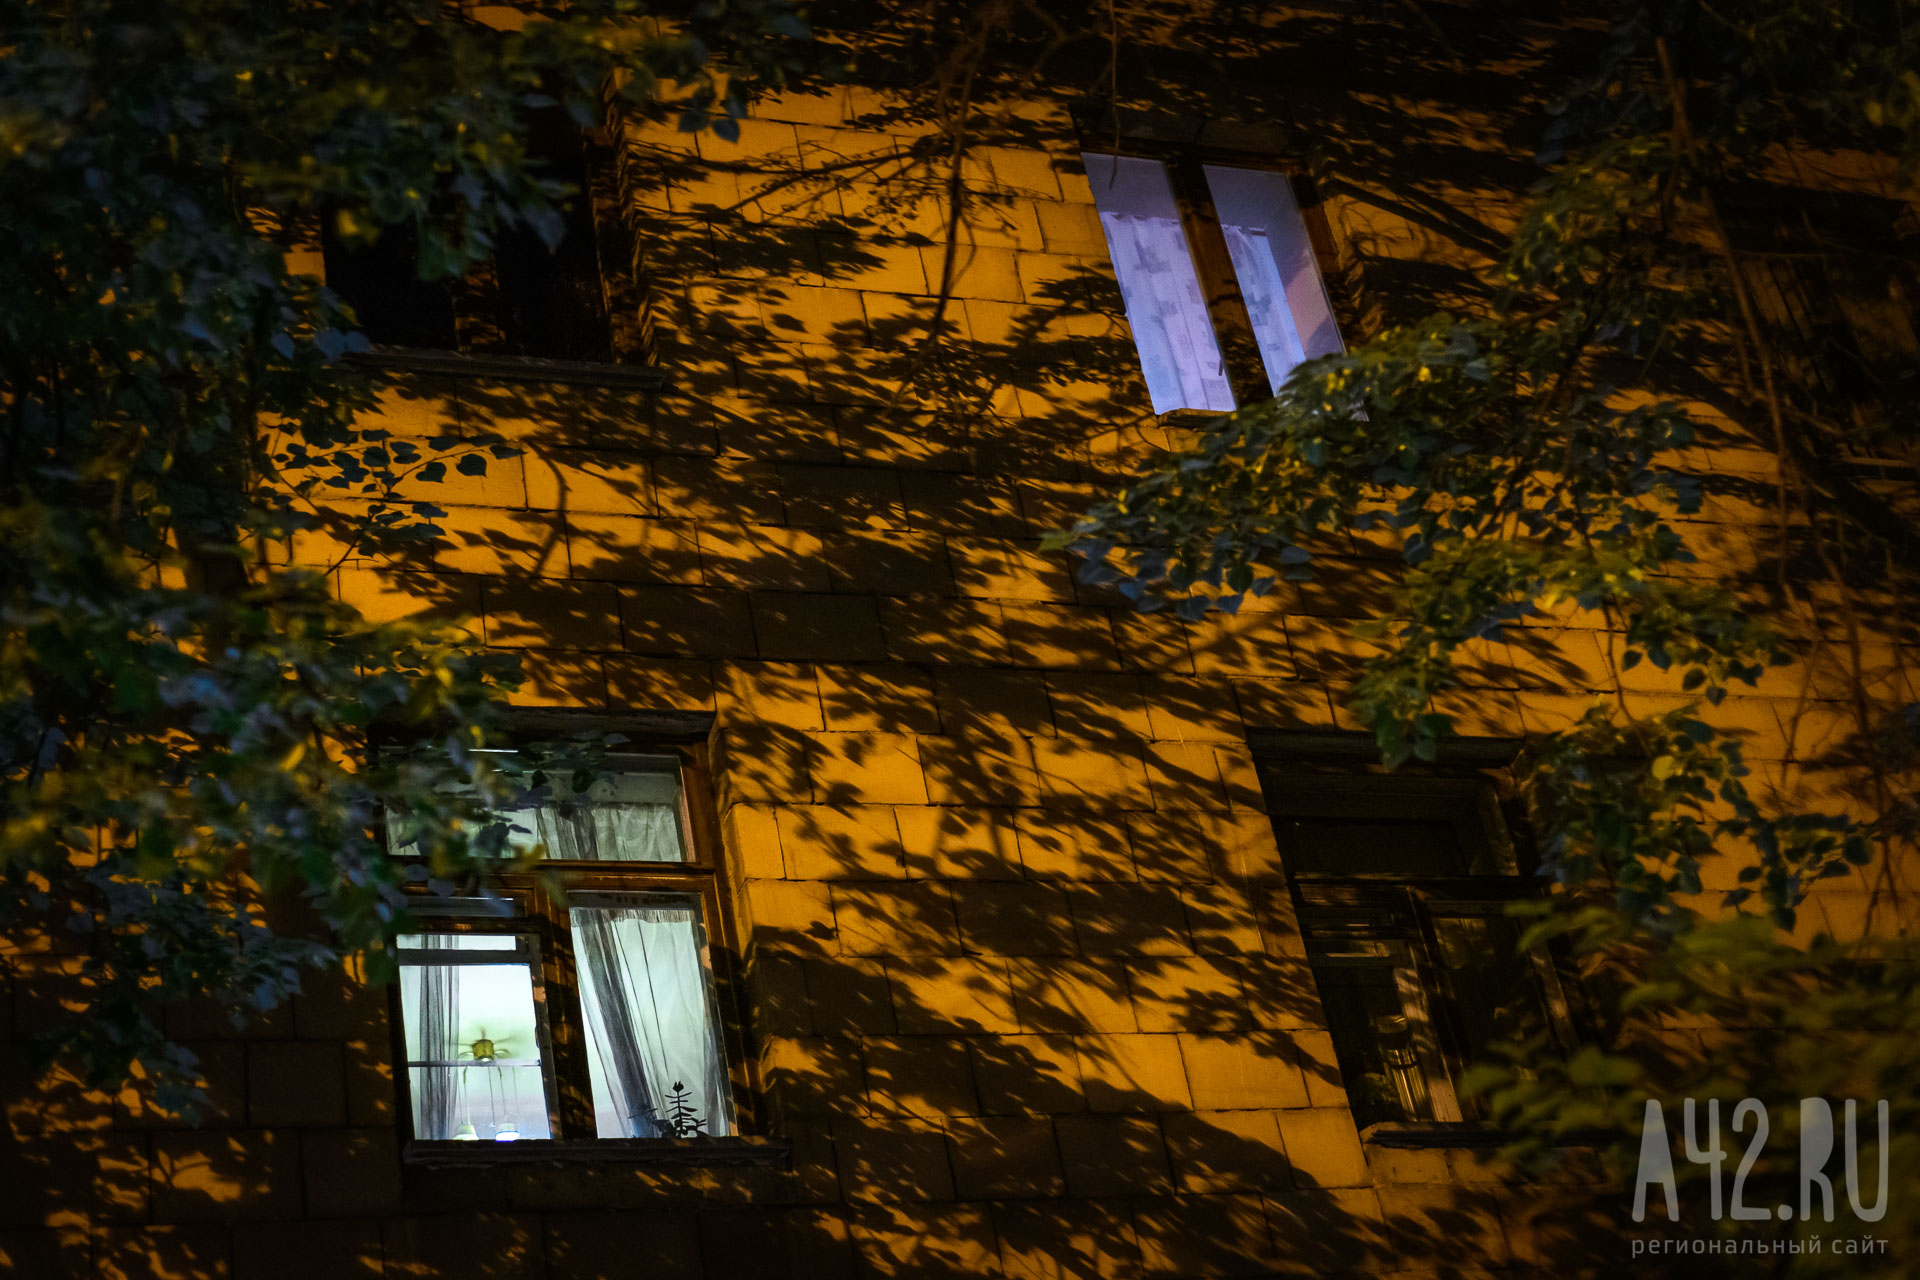 Соцсети: в Кузбассе дети с балкона кидали в прохожих яйца и картофель